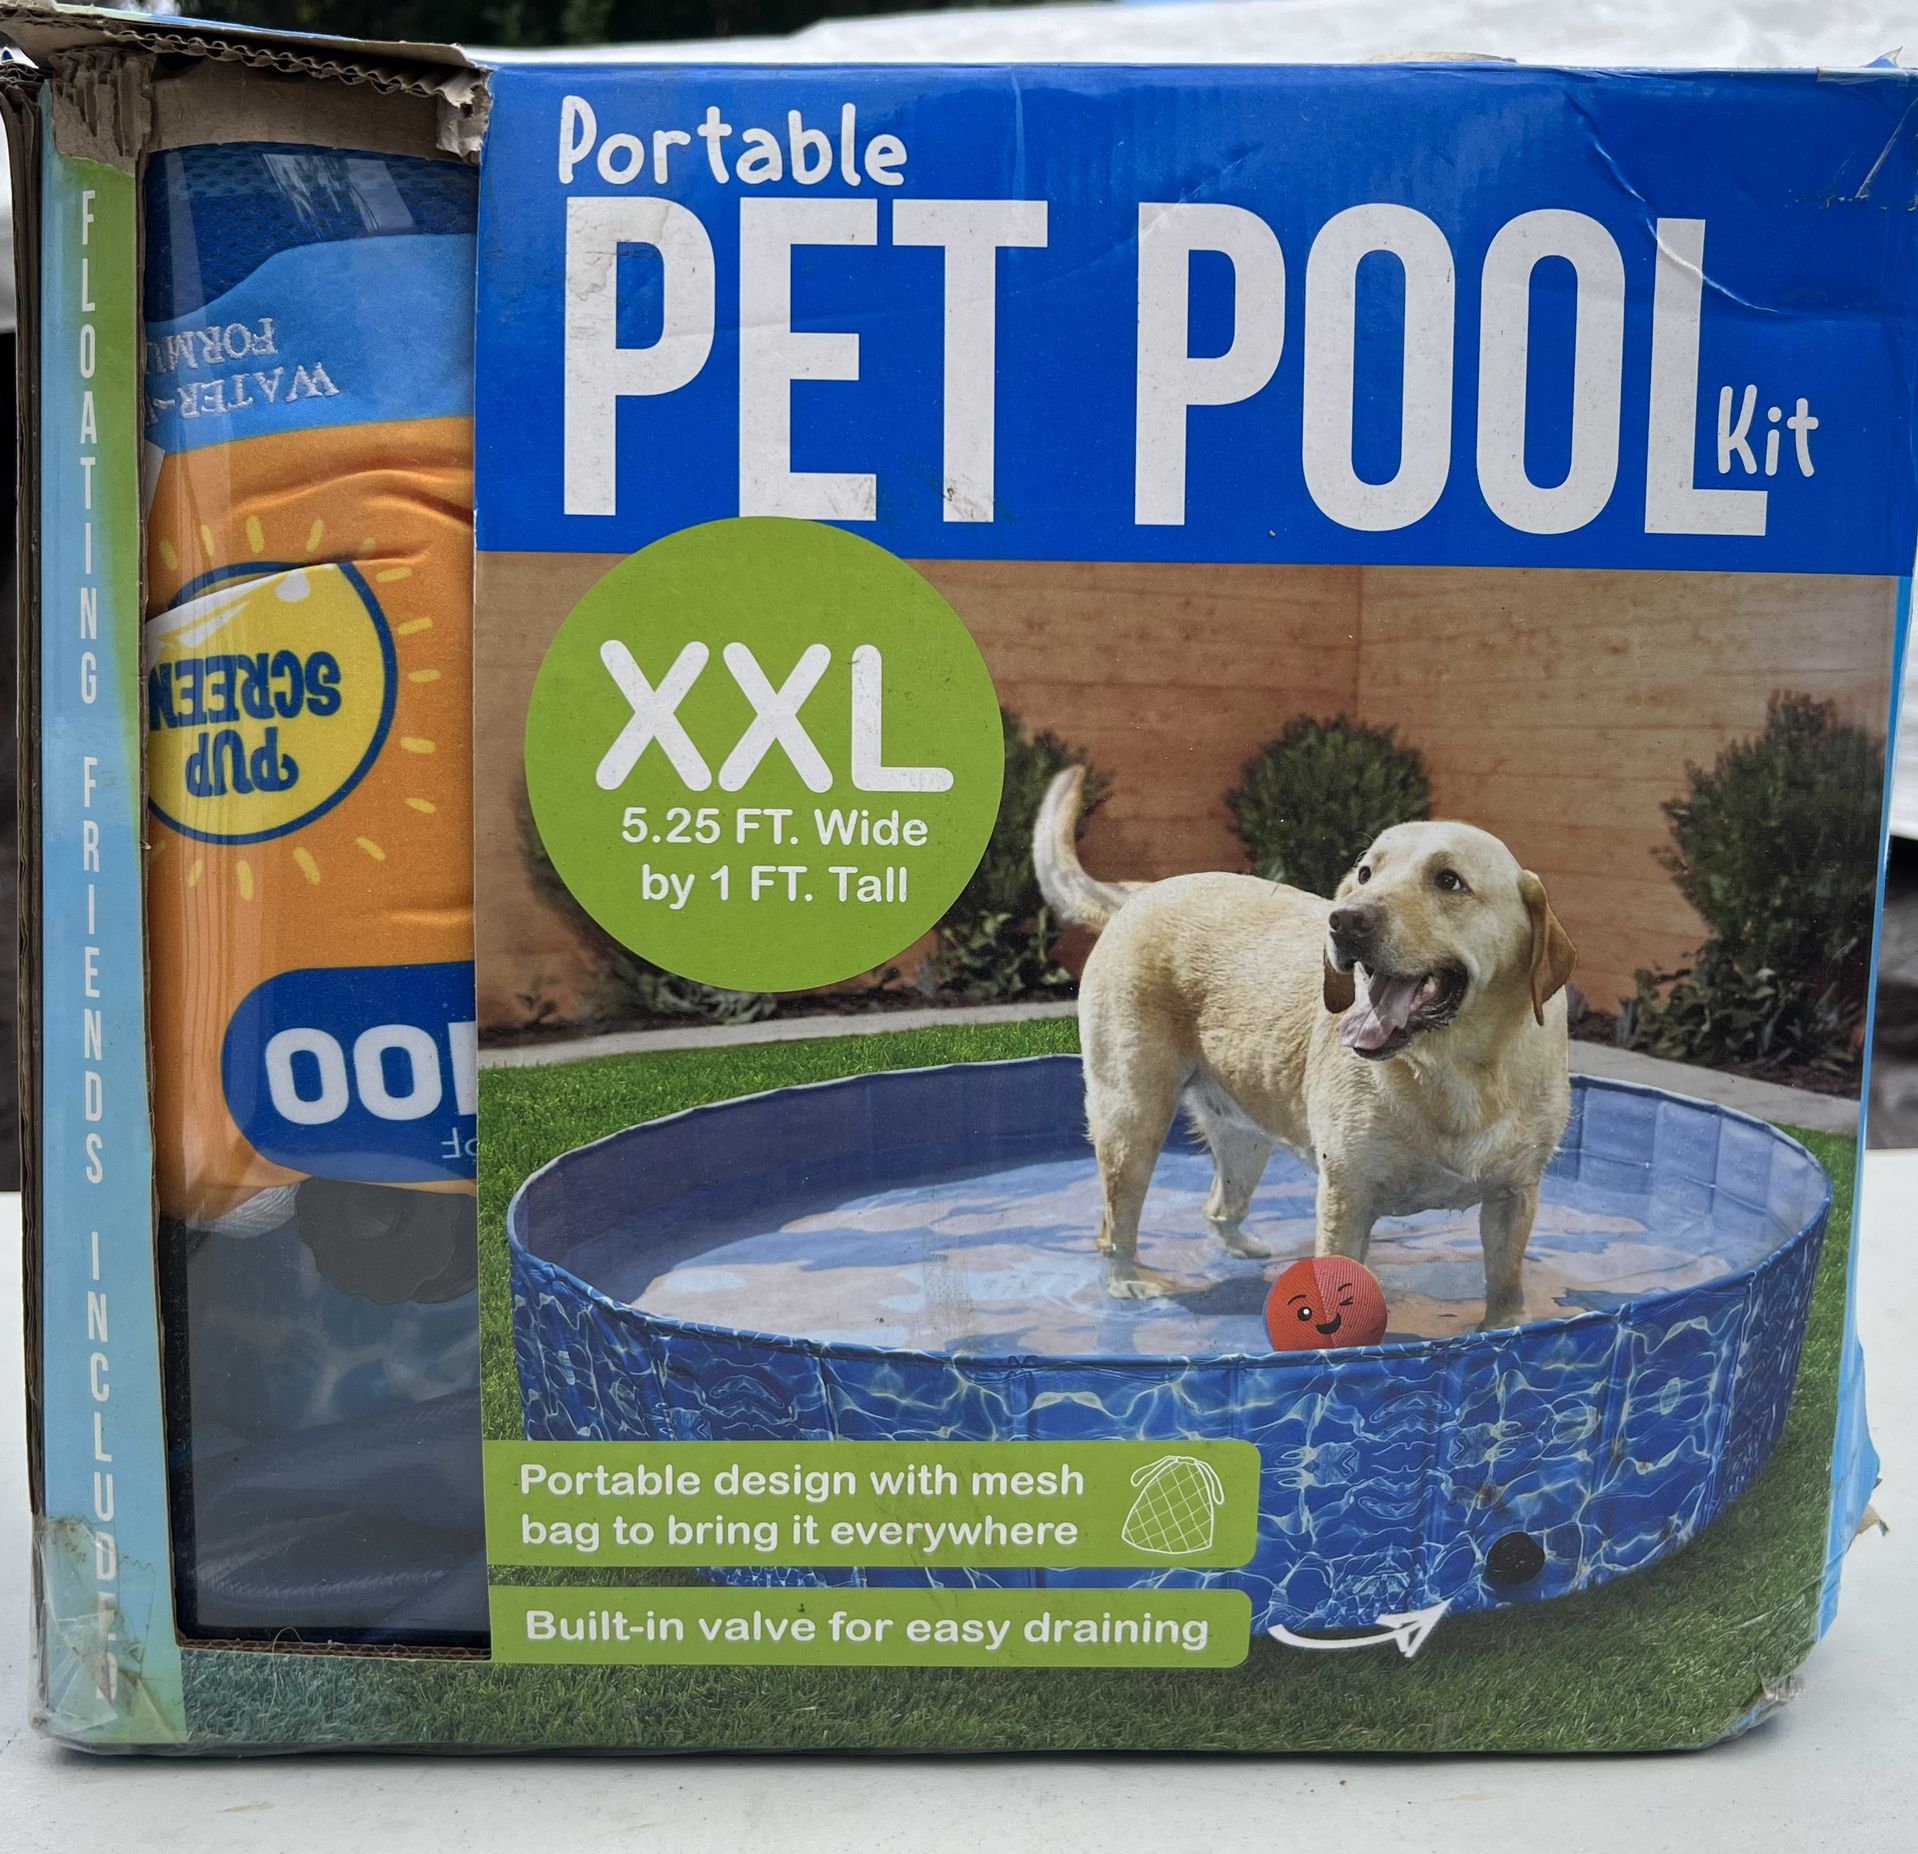 XXL Pet Pool Kit